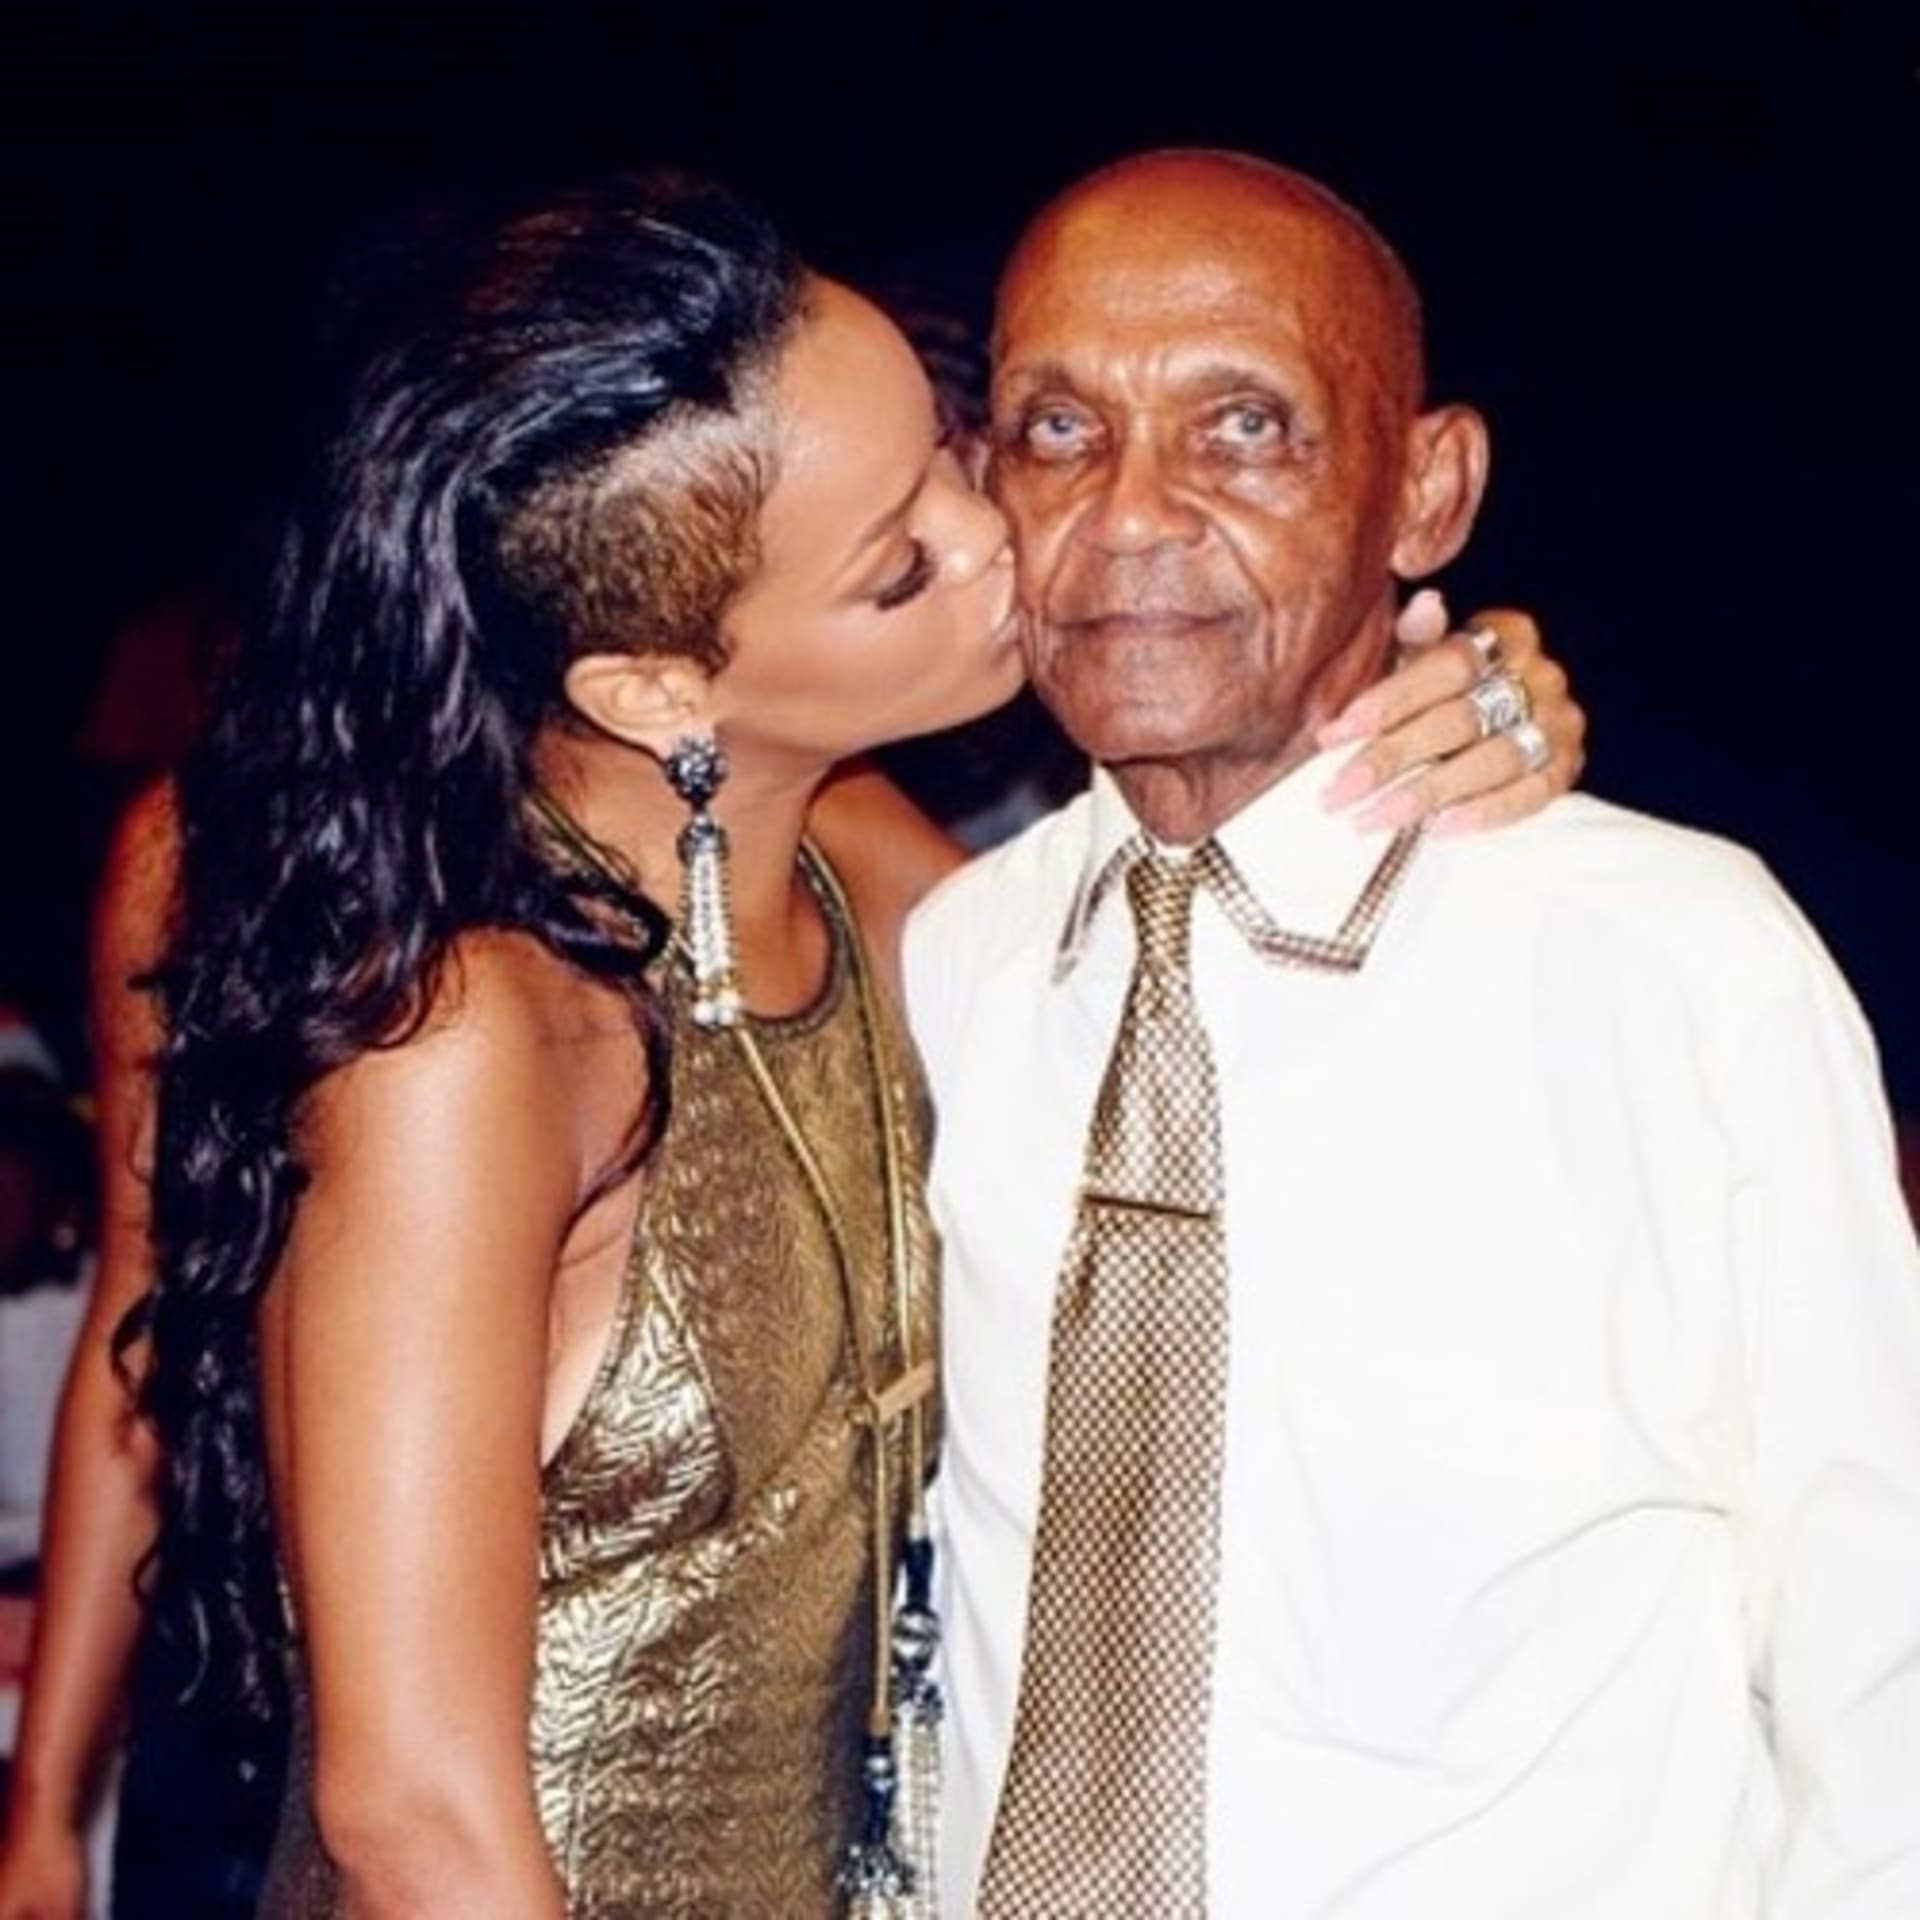 Zpěvačka Rihanna objímá svého dědečka